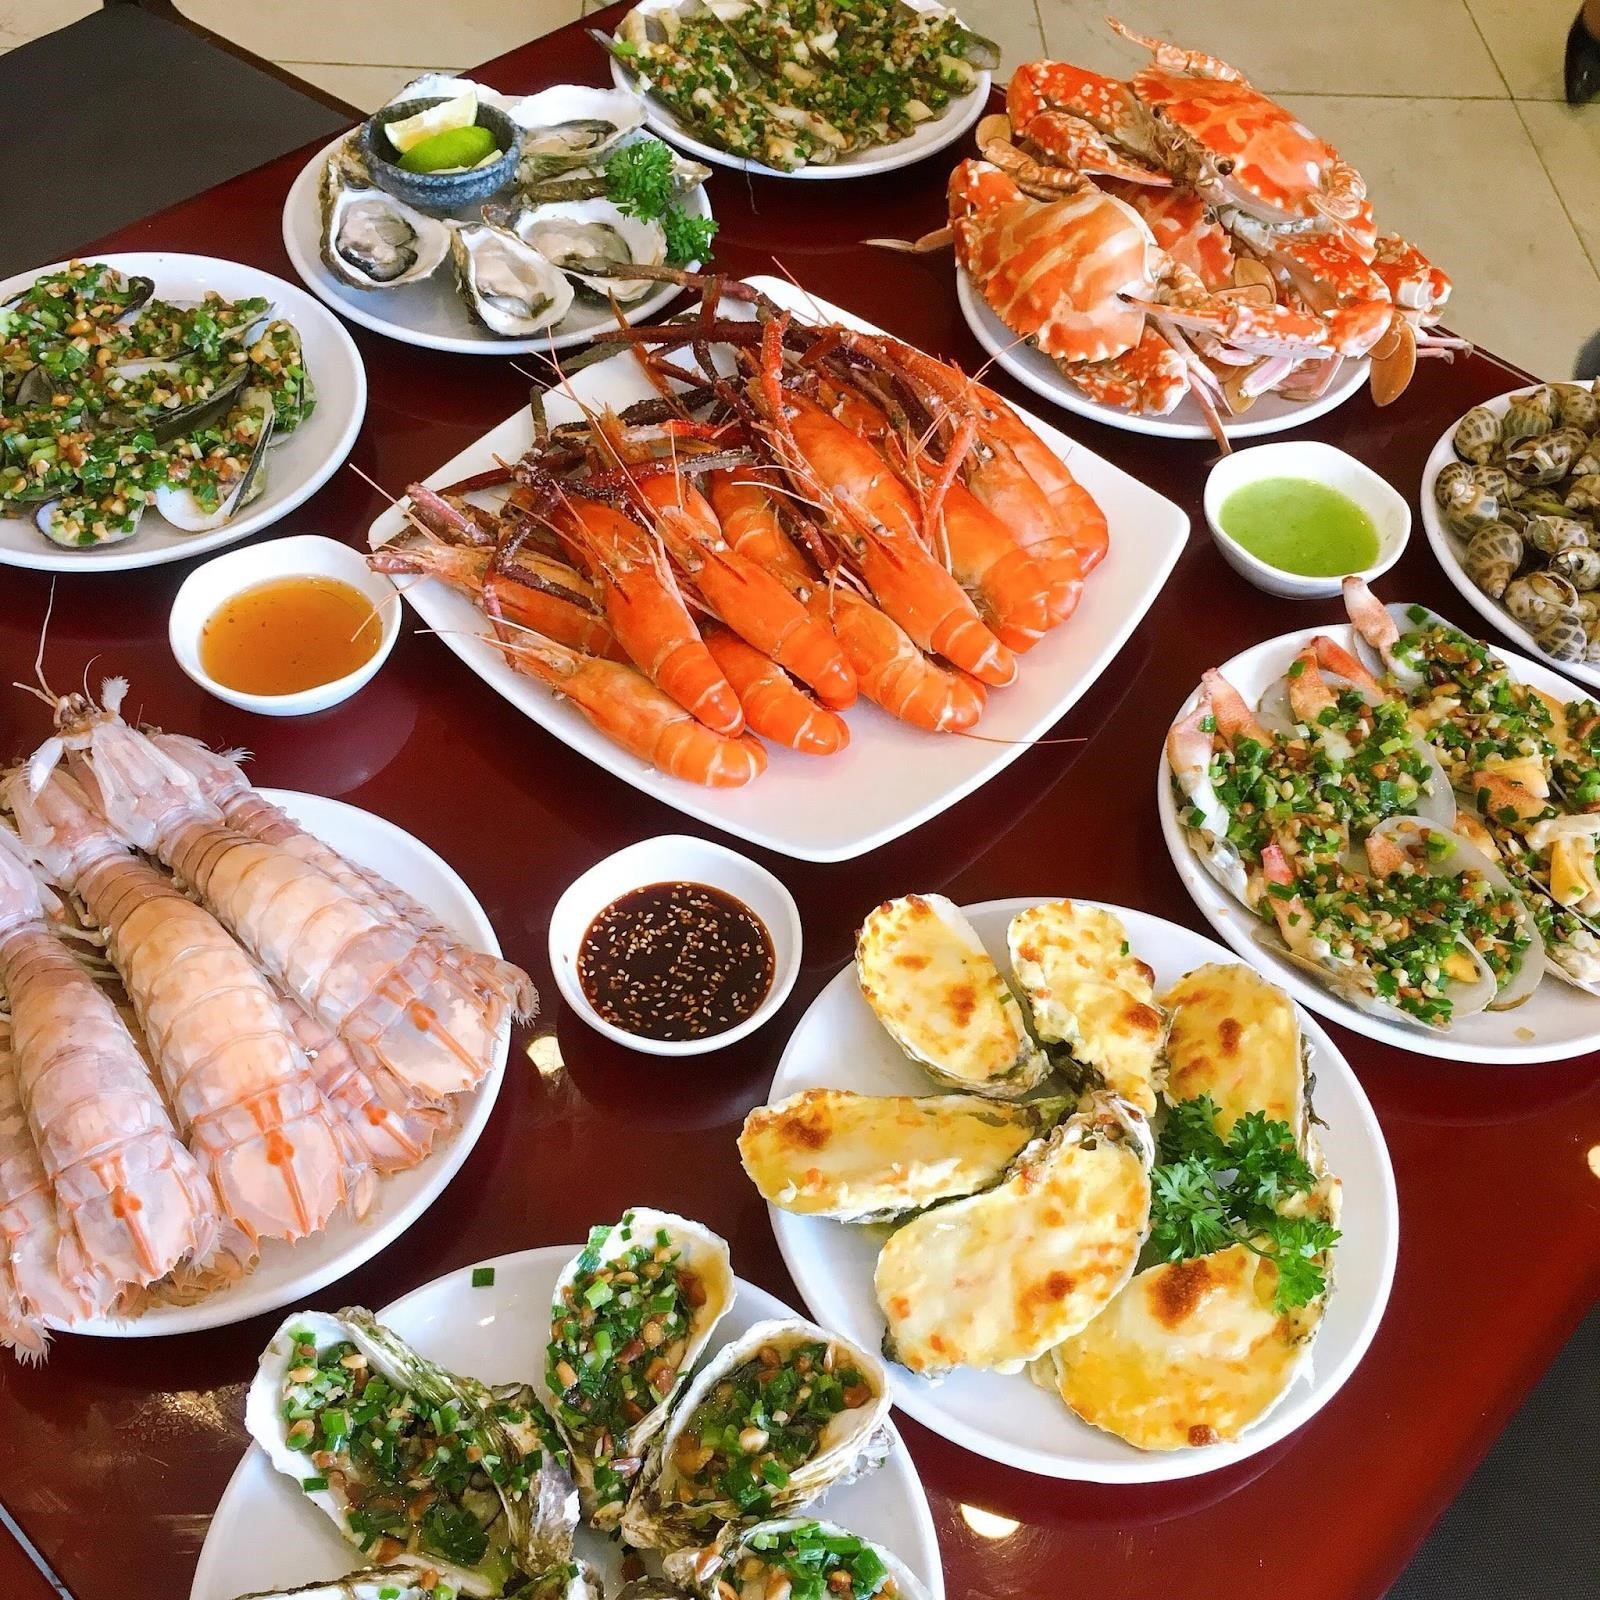 Các món hải sản hấp dẫn của Hải sản Sầm Sơn thu hút sự quan tâm từ người dùng.